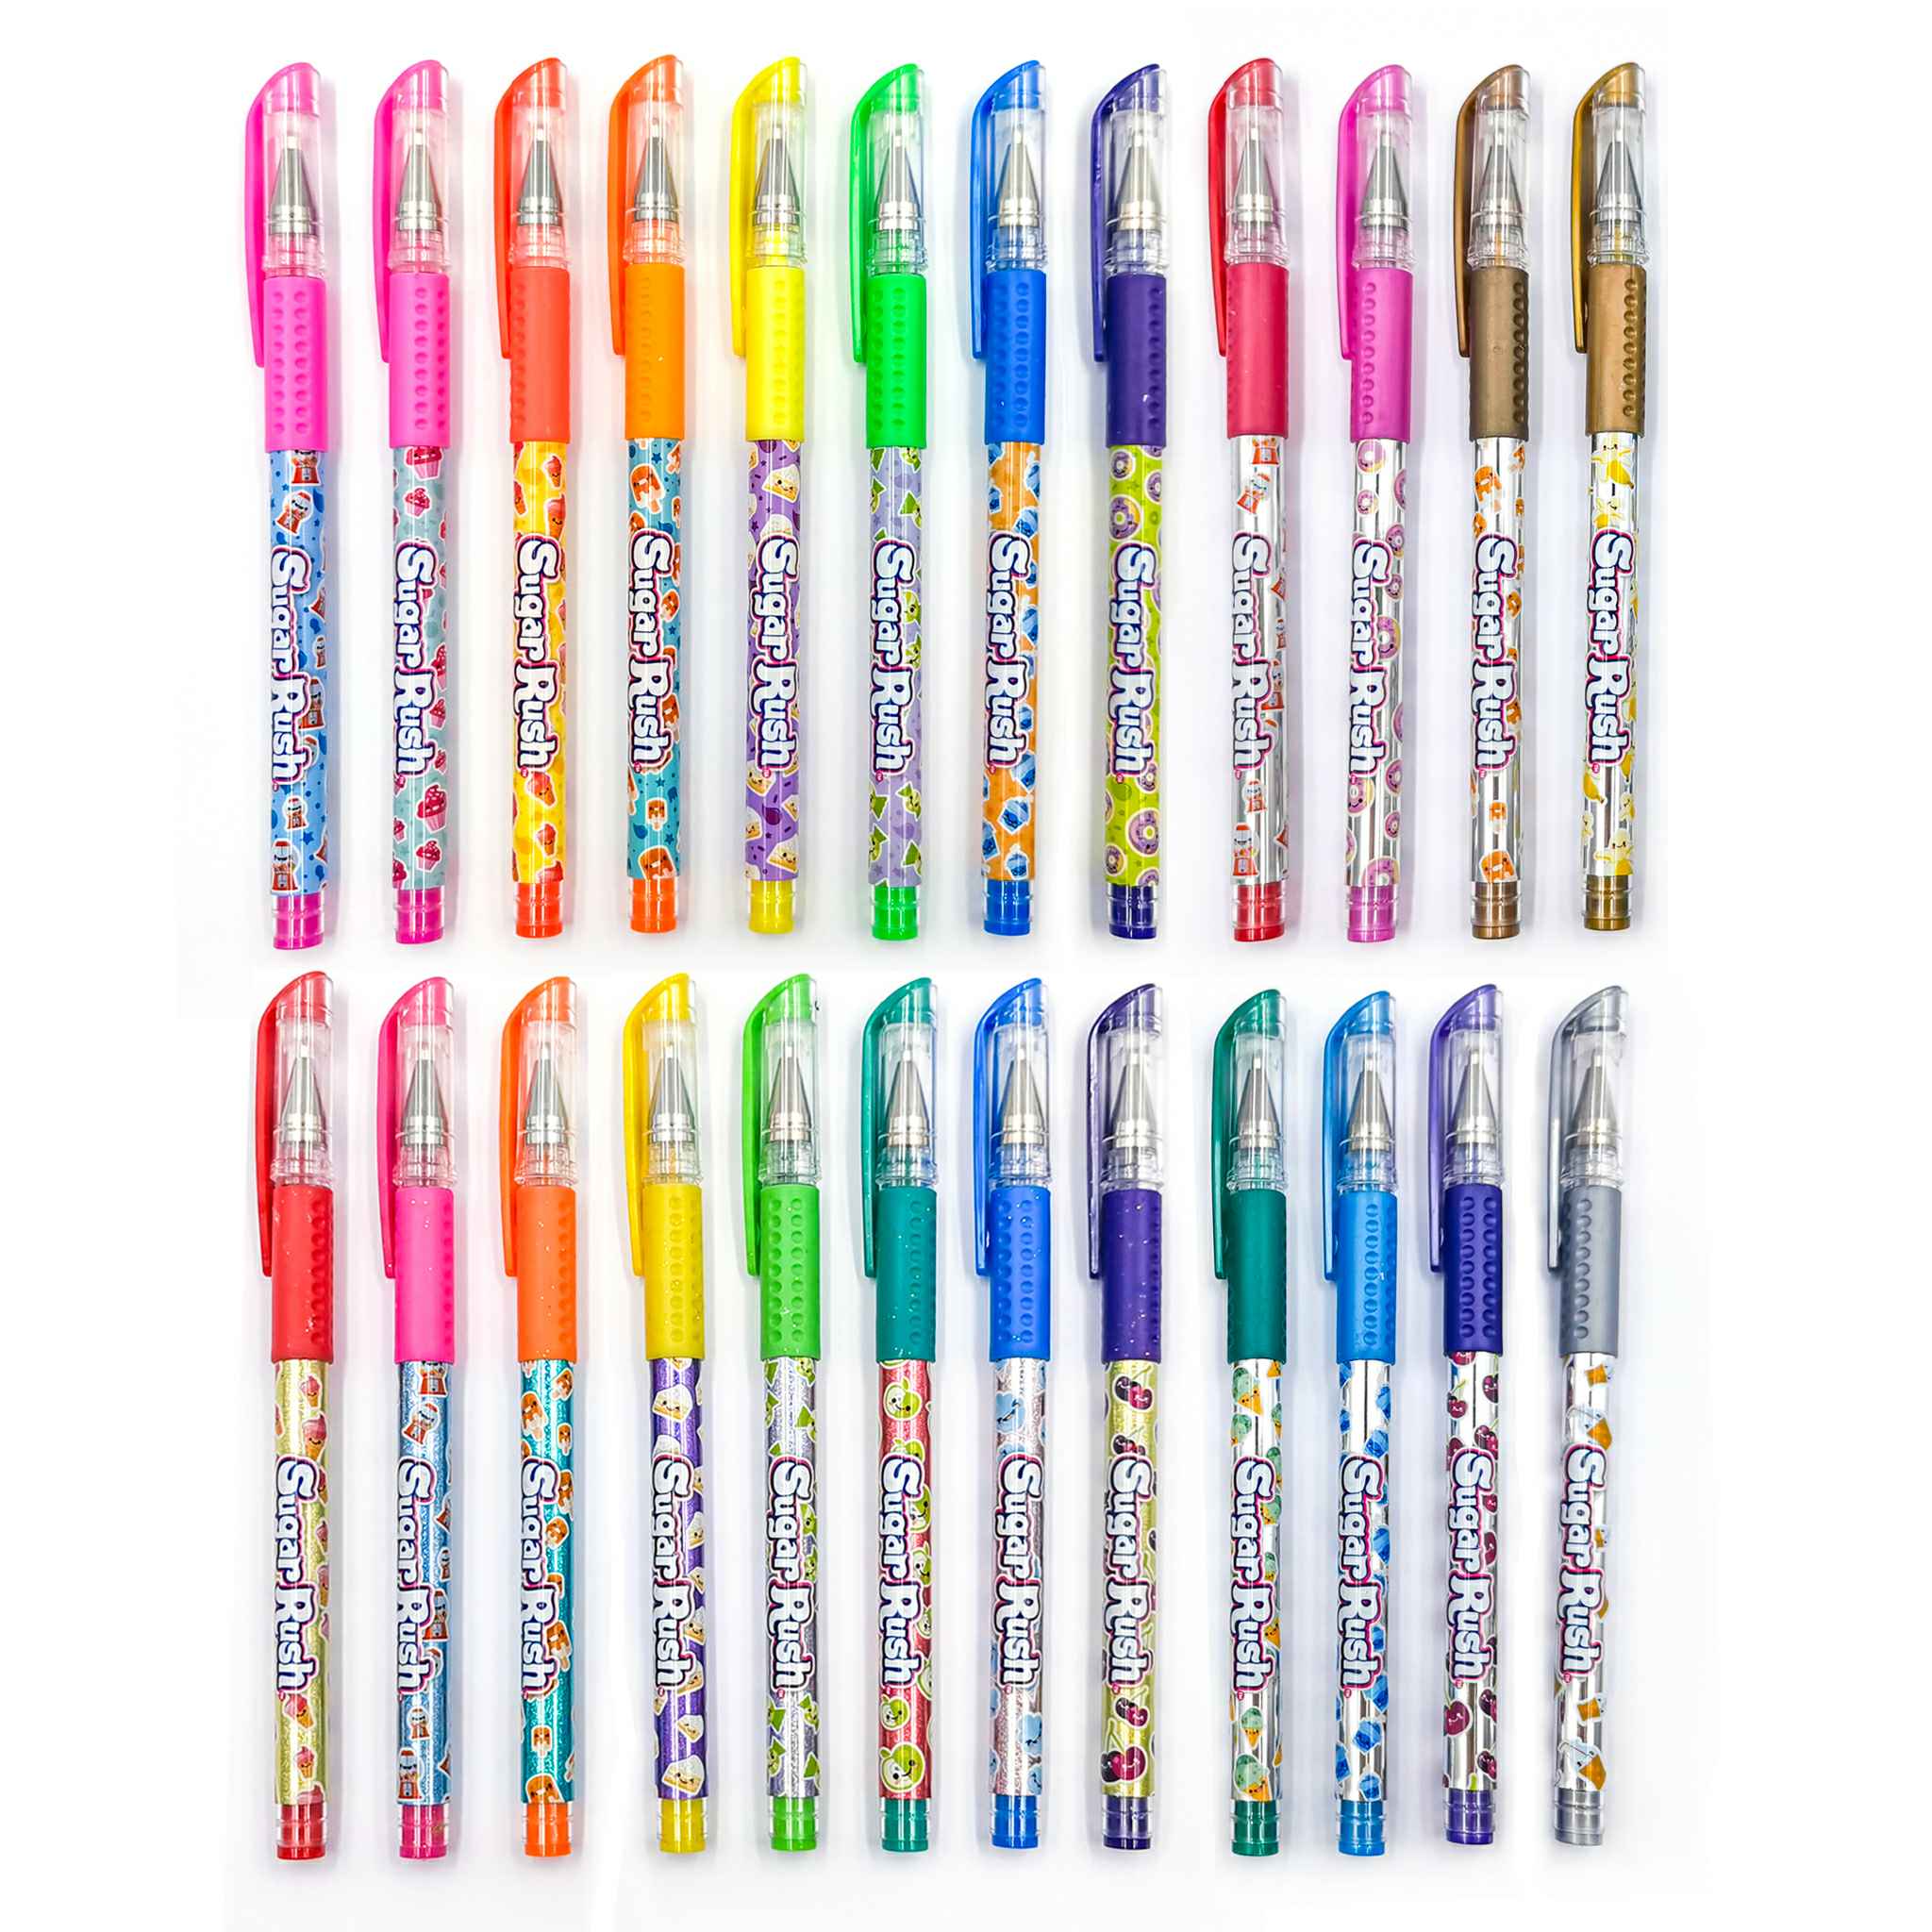 https://shopscentos.com/cdn/shop/files/shopscentos-gel-pen-sugar-rush-scented-colored-gel-pens-24-pack-set-41537344831778.jpg?v=1698250338